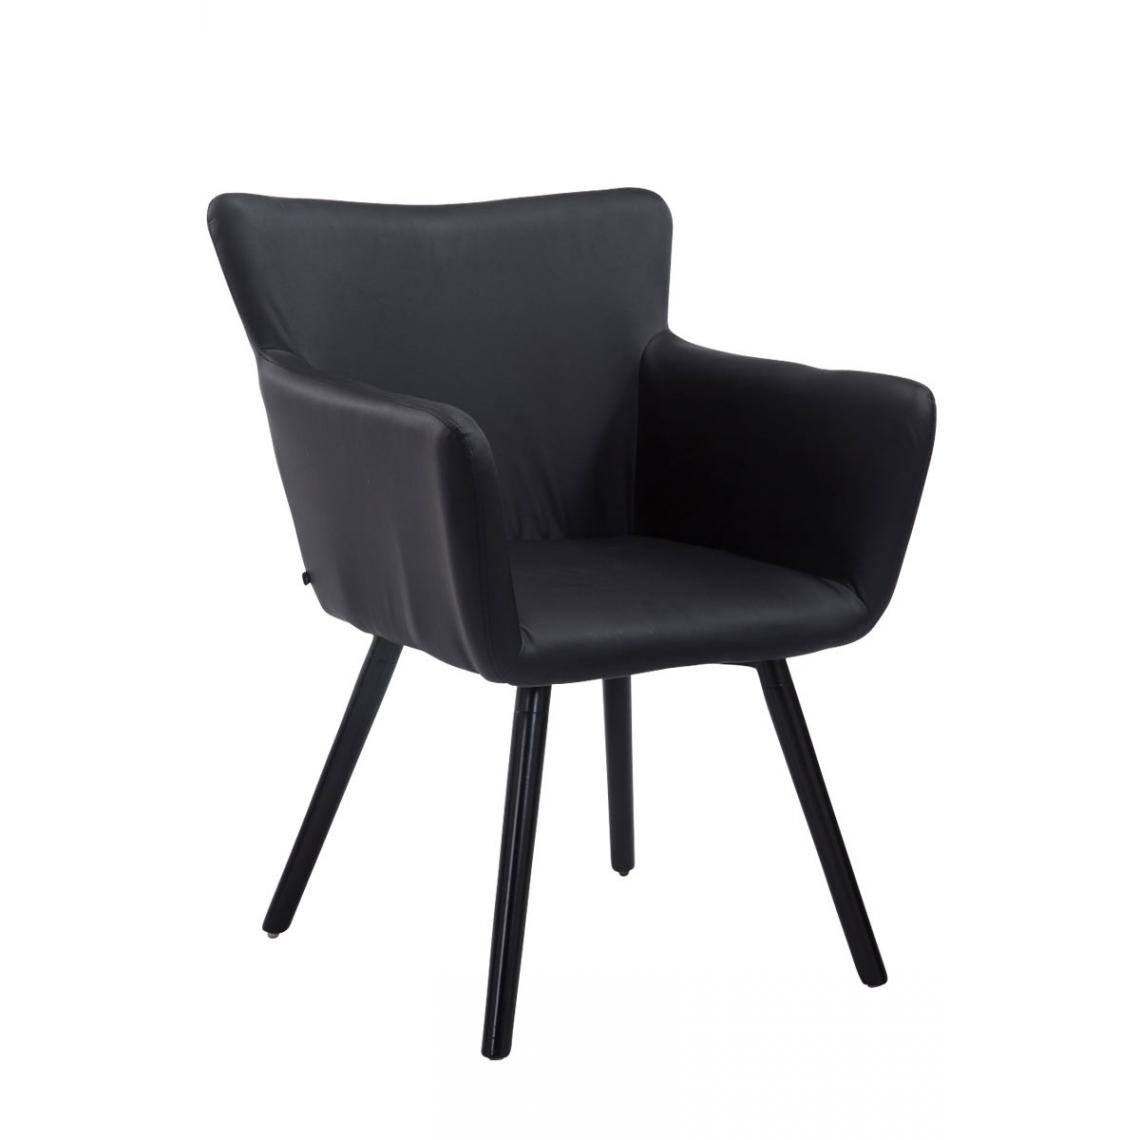 Icaverne - Splendide Chaise visiteur ligne Mascate noire couleur noir - Chaises